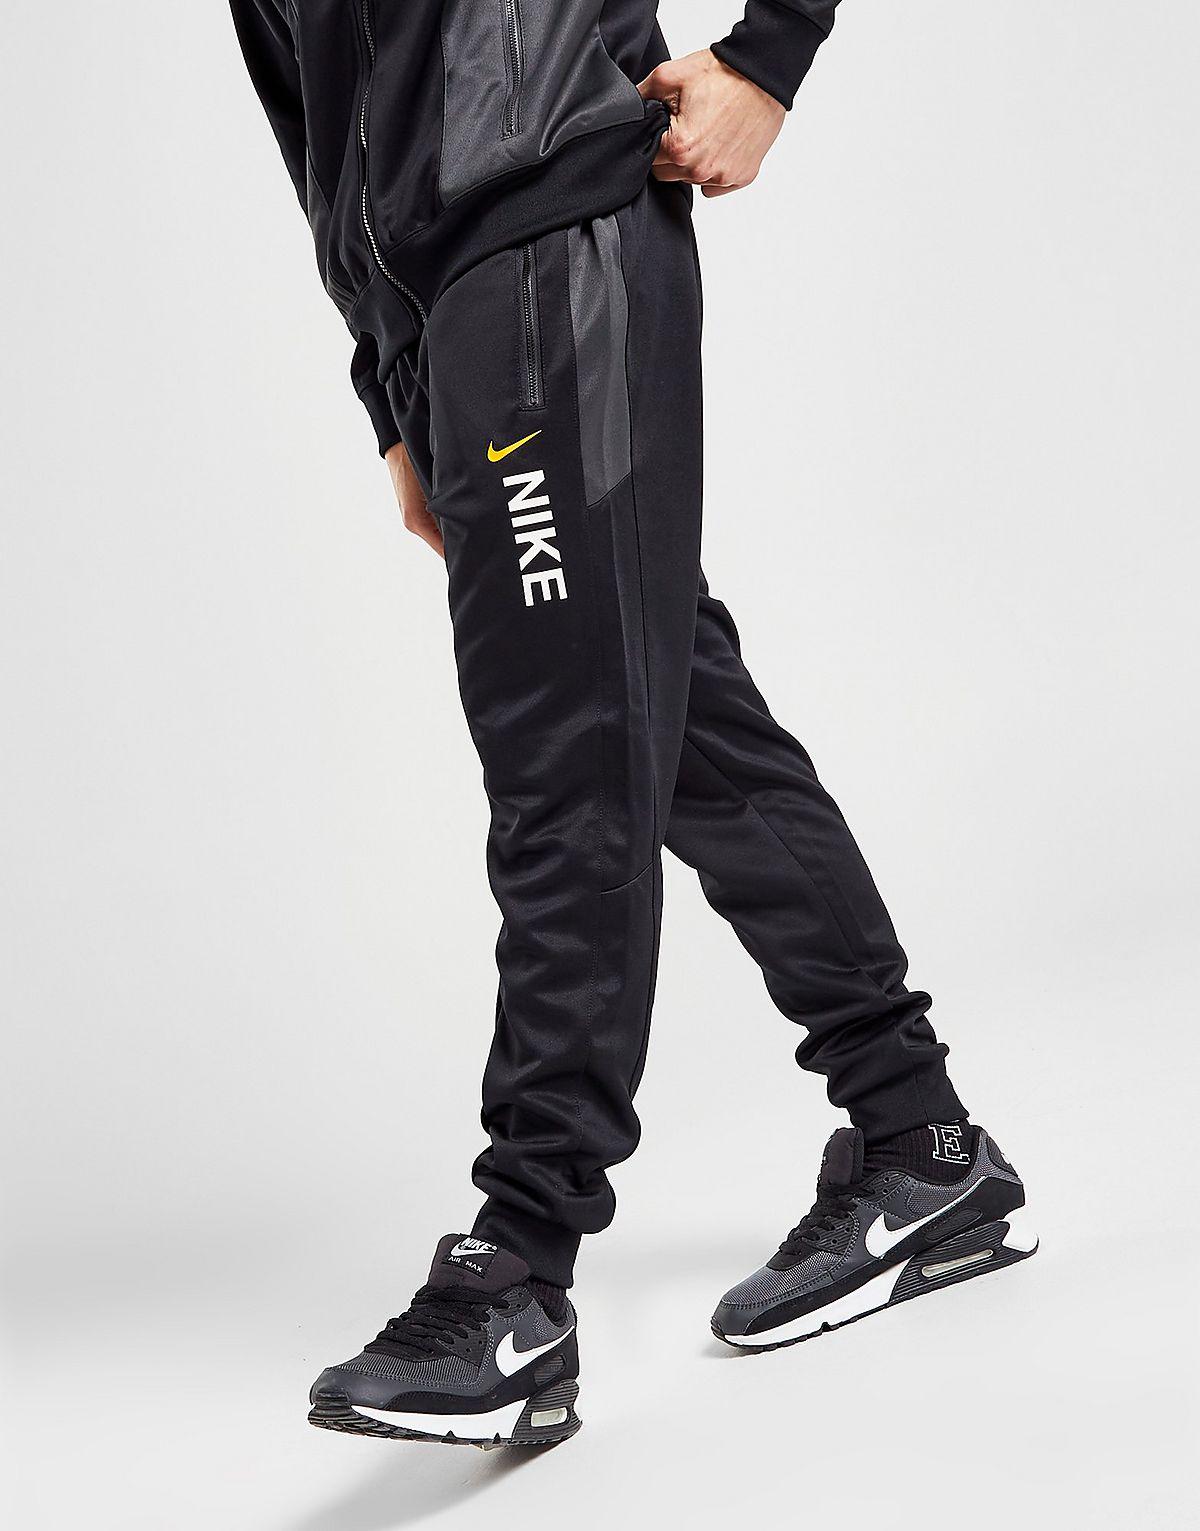 Men's Nike Sportswear Hybrid Fleece Jogger Pants| JD Sports